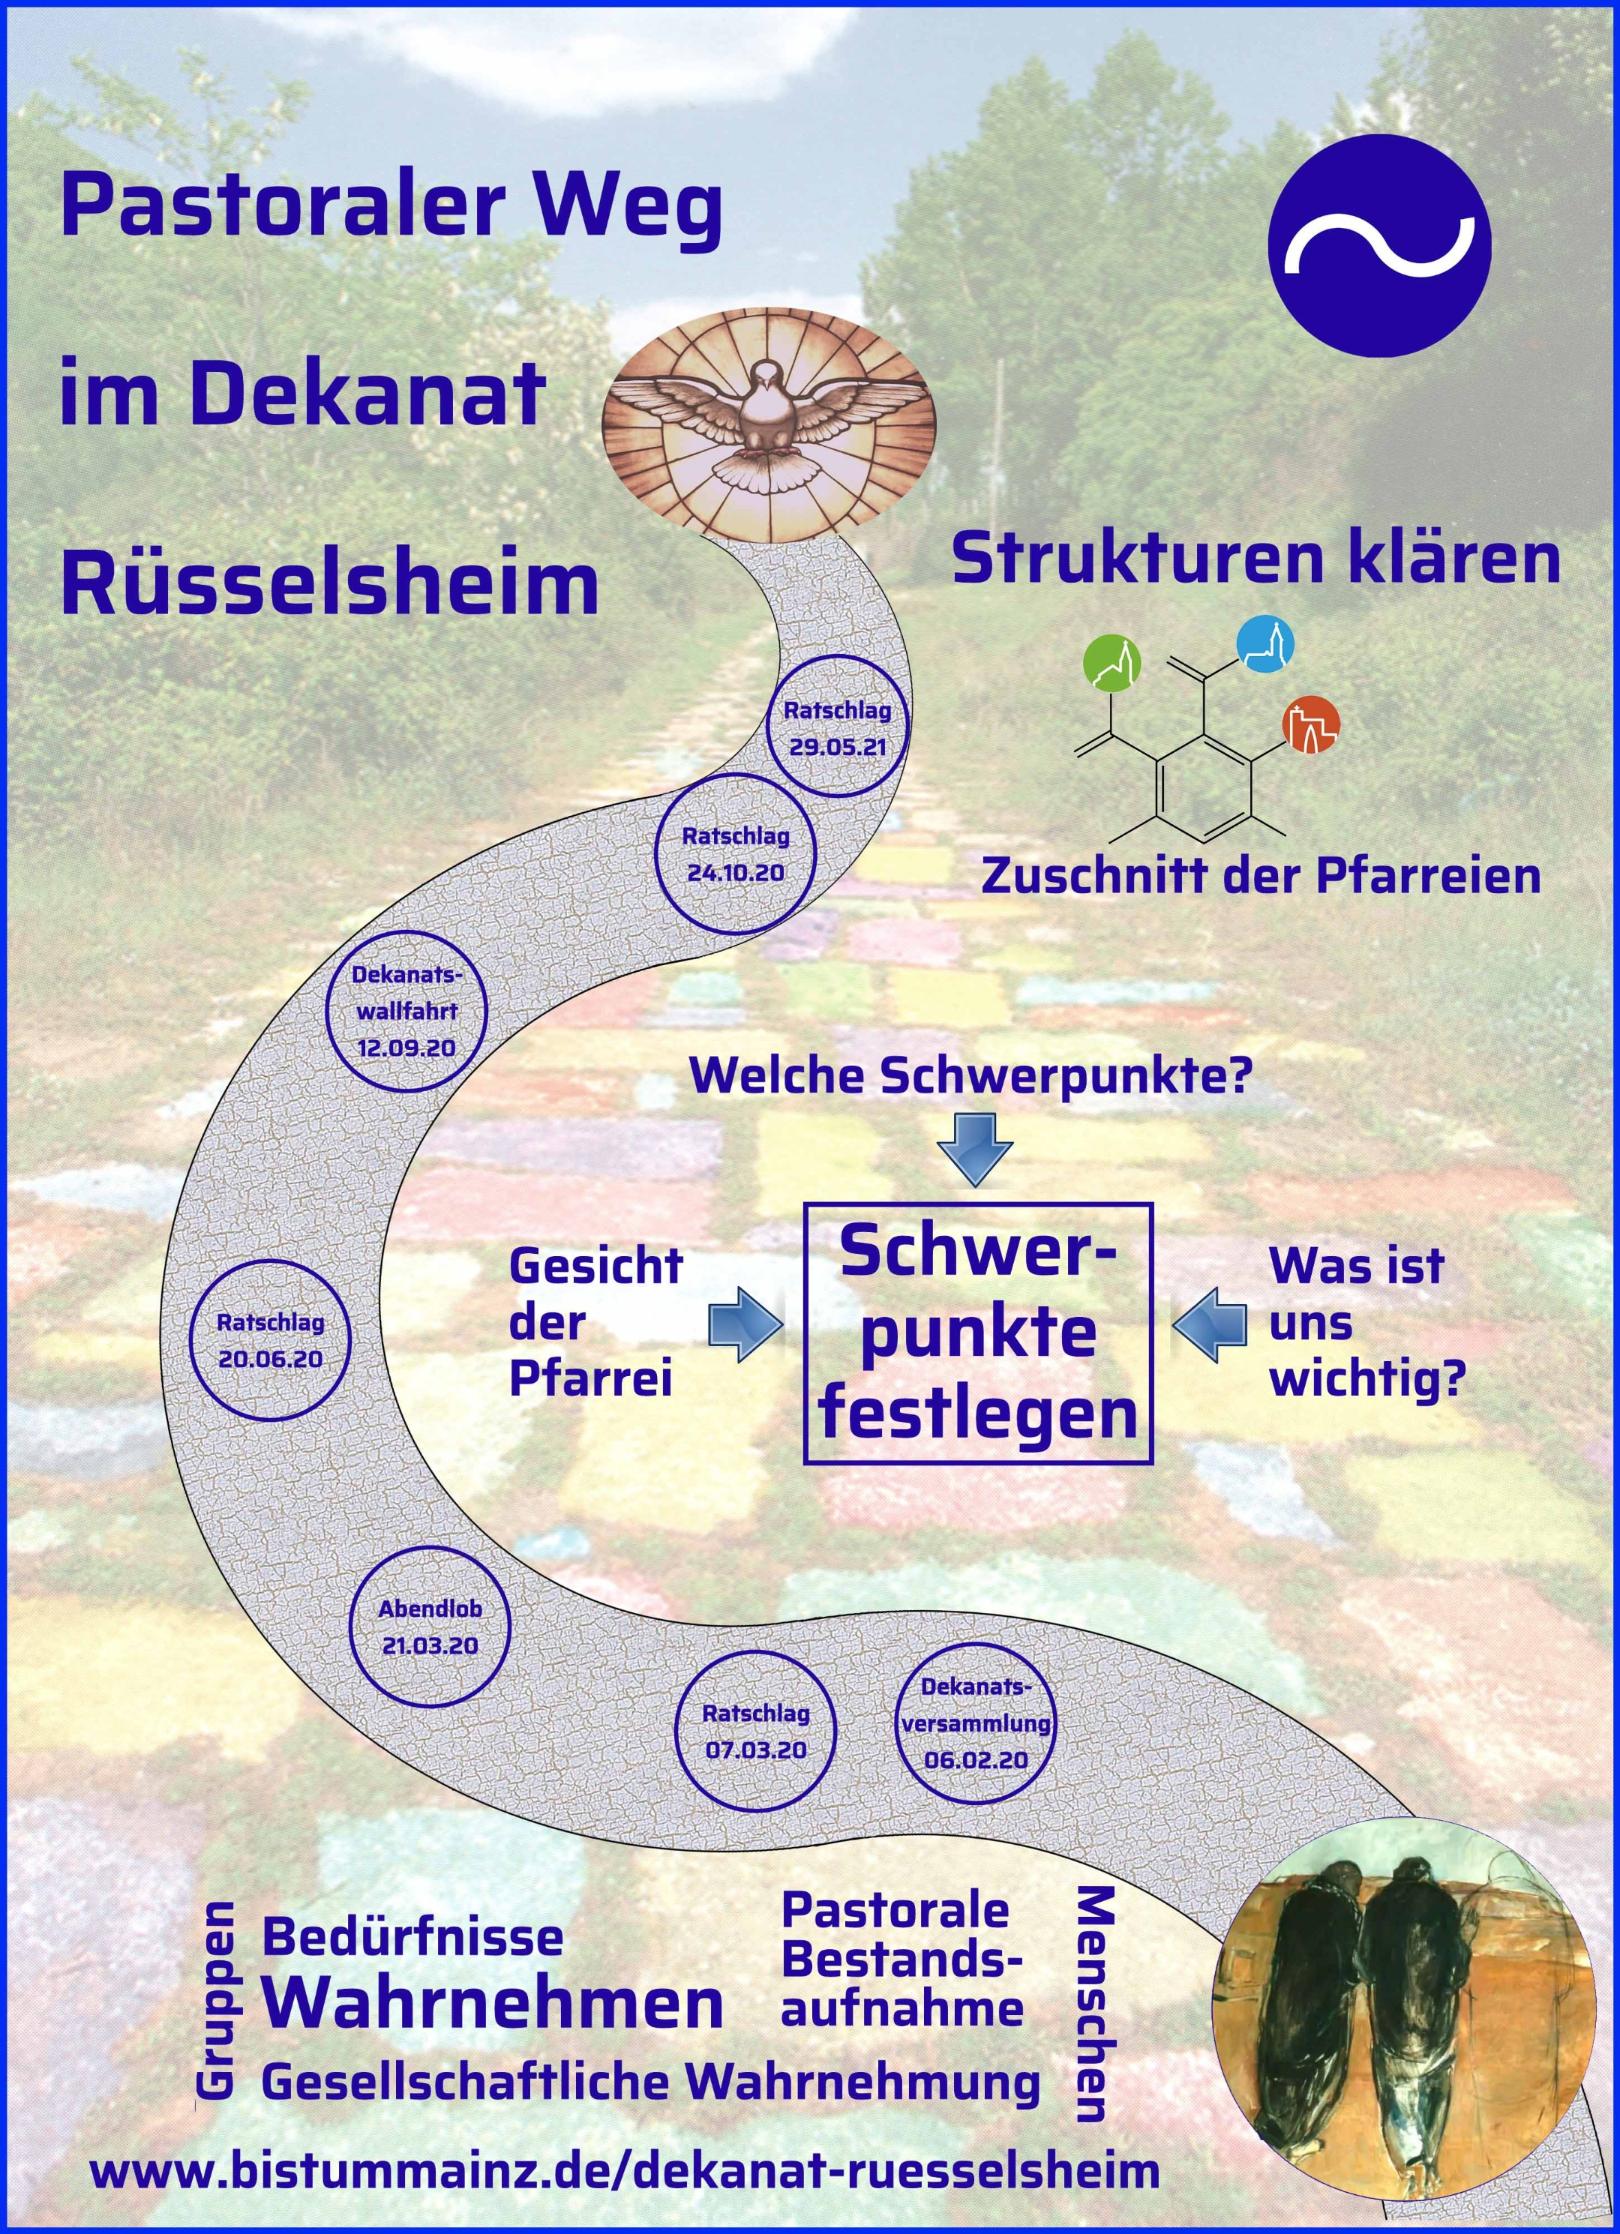 Plakat zum Pastoralen Weg im Dekanat Rüsselsheim (c) Katholisches Dekanat Rüsselsheim